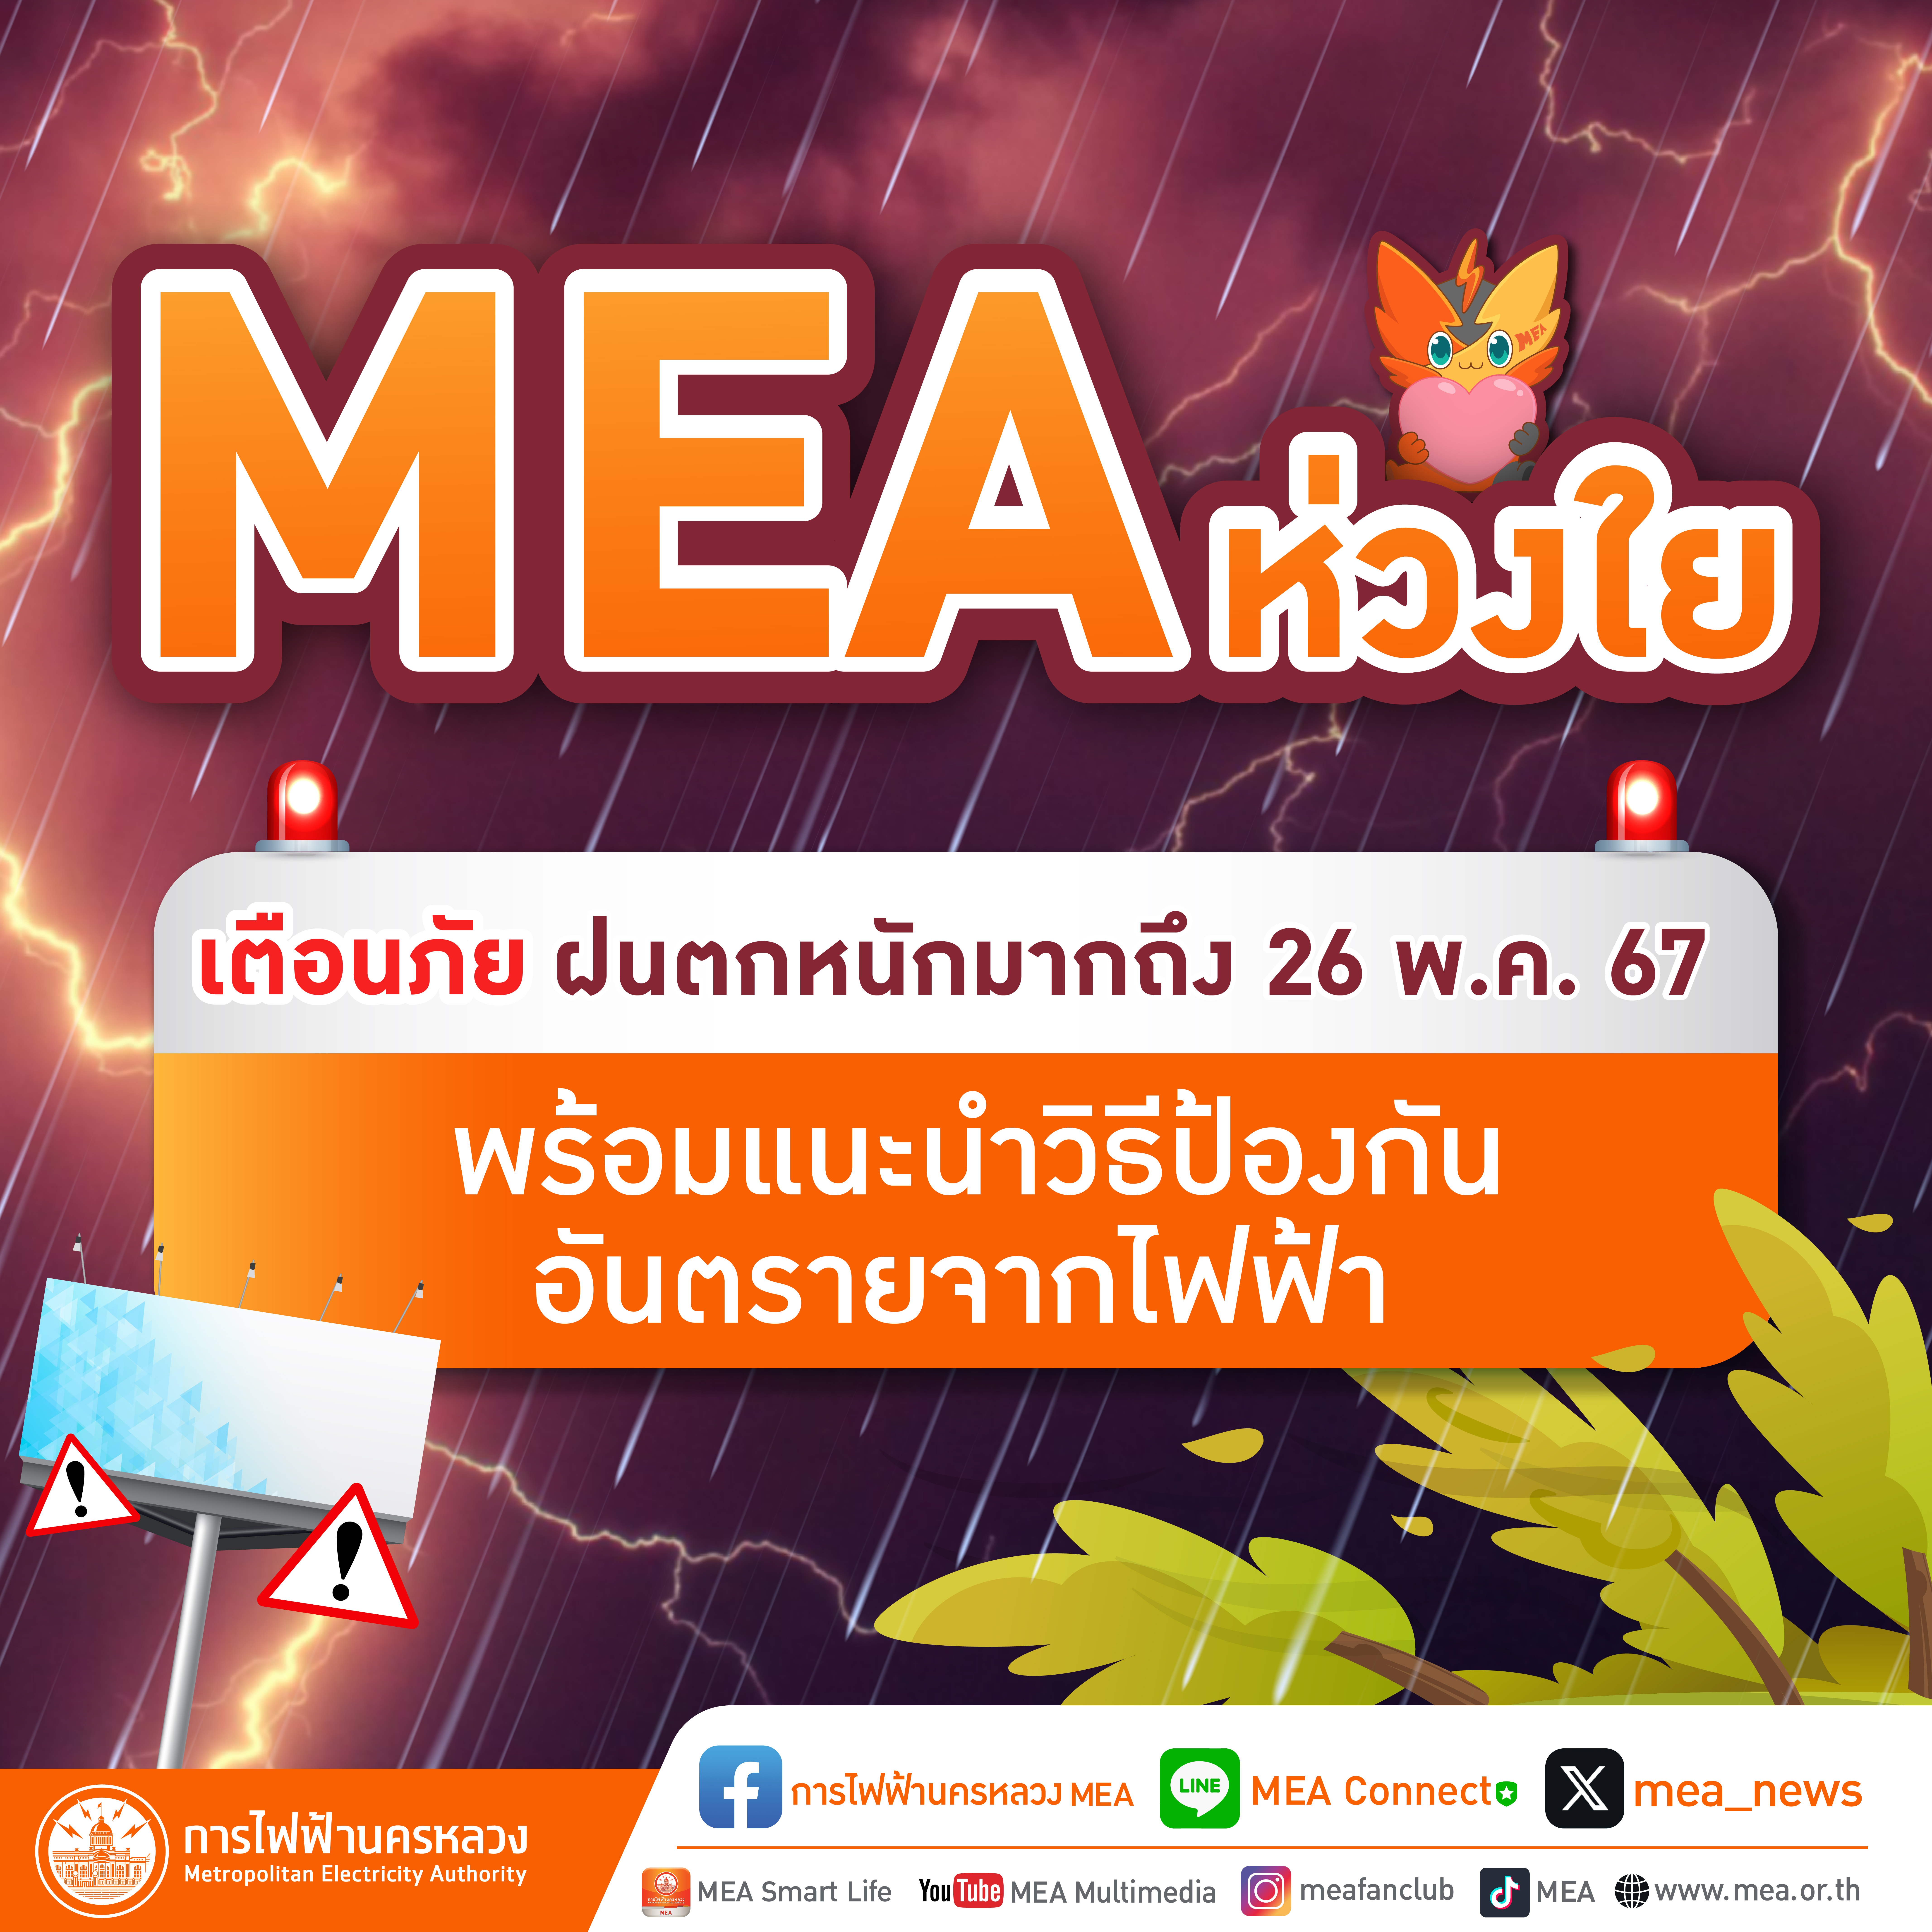 MEA ห่วงใย เตือนภัยฝนตกหนักมากถึง 26 พ.ค. 67 พร้อมแนะนำวิธีป้องกันอันตรายจากไฟฟ้า